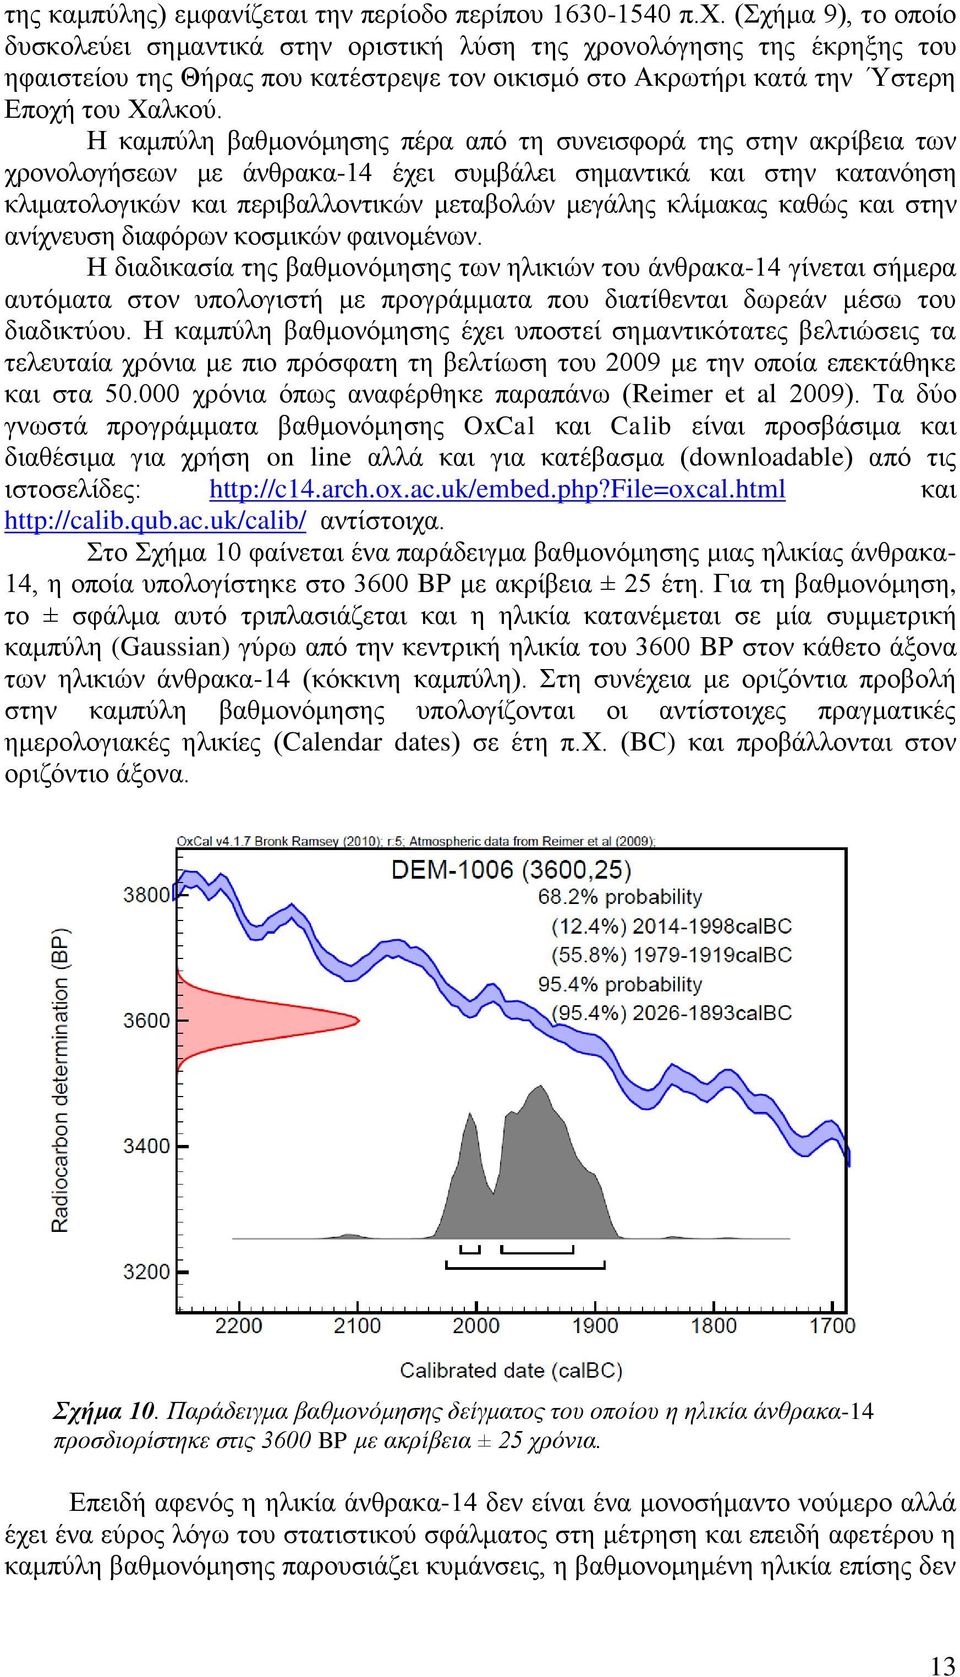 ραδιομετρικές χρονολογίων vs χρονολόγηση άνθρακα Φαίρμπανκς Μορς ραντεβού